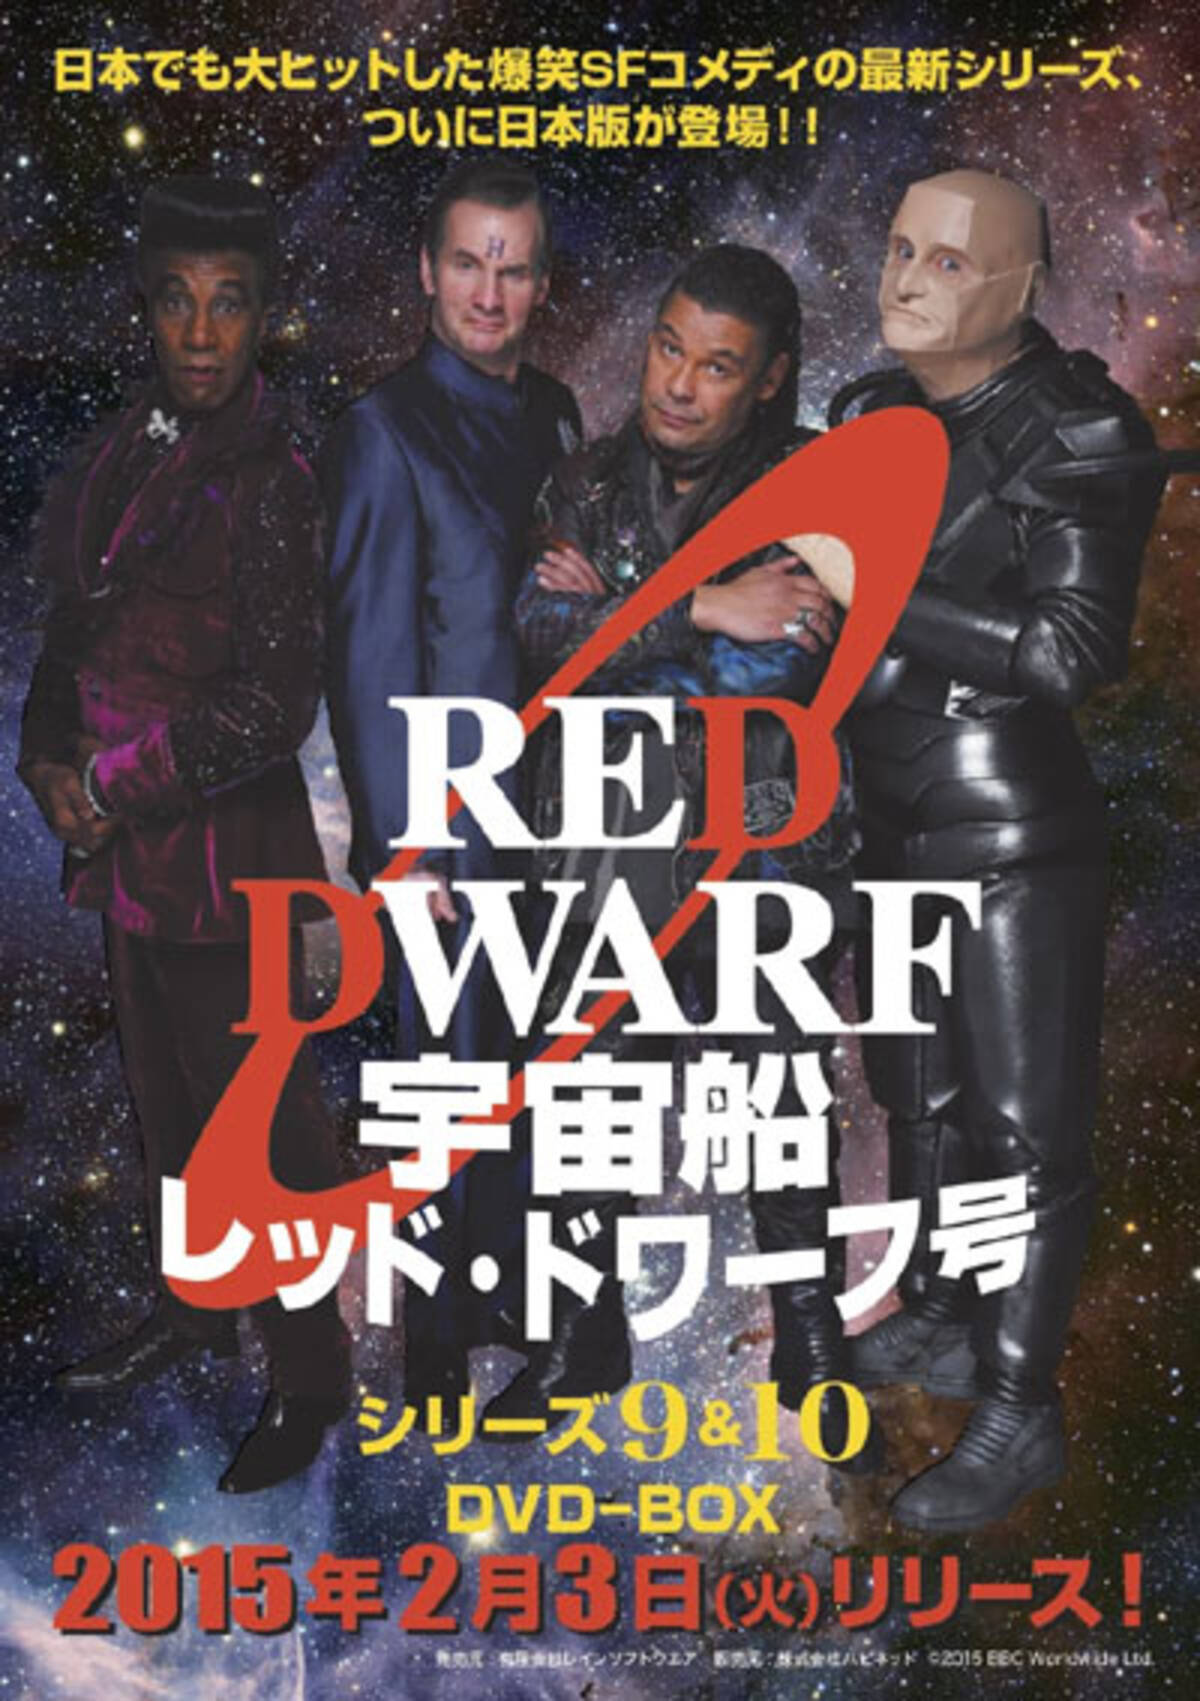 爆笑sfコメディ 宇宙船レッド ドワーフ号 続編dvdの発売日が決定 14年10月27日 エキサイトニュース